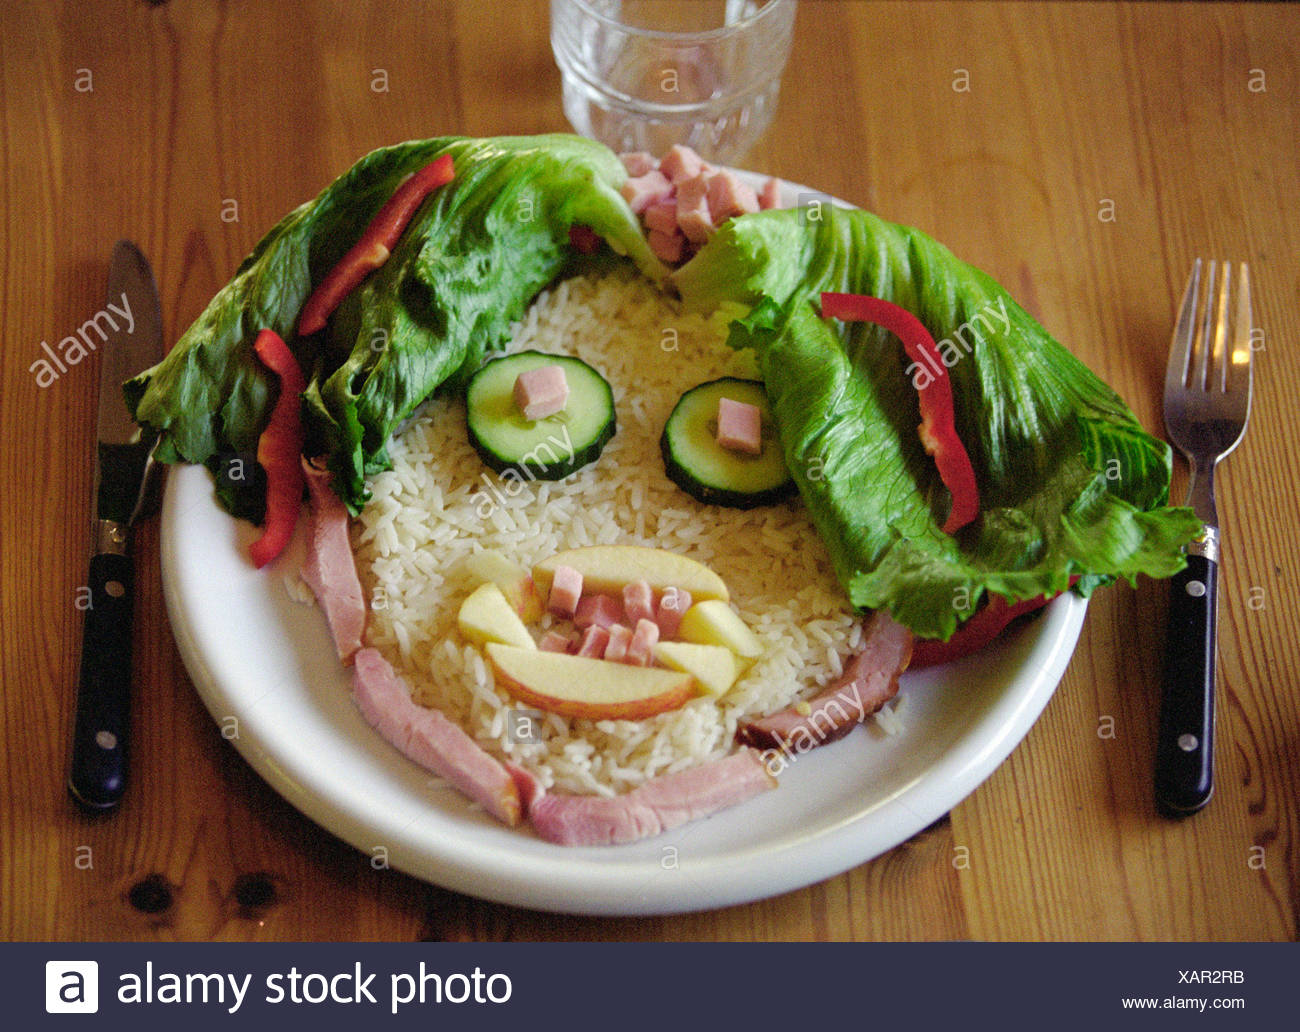 Tallrik med maten formad till ett ansikte Face of food on a plate ...